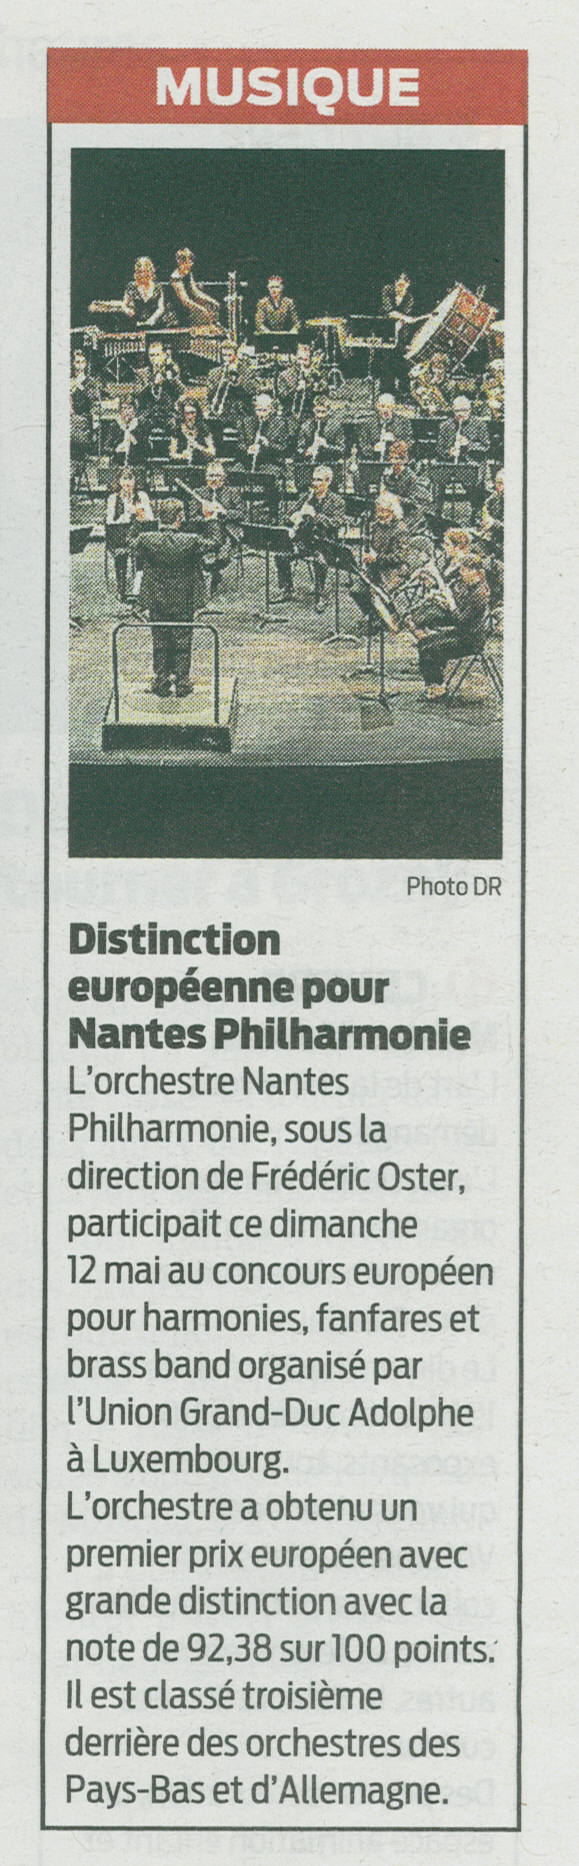 Distinction européenne pour Nantes Philharmonie